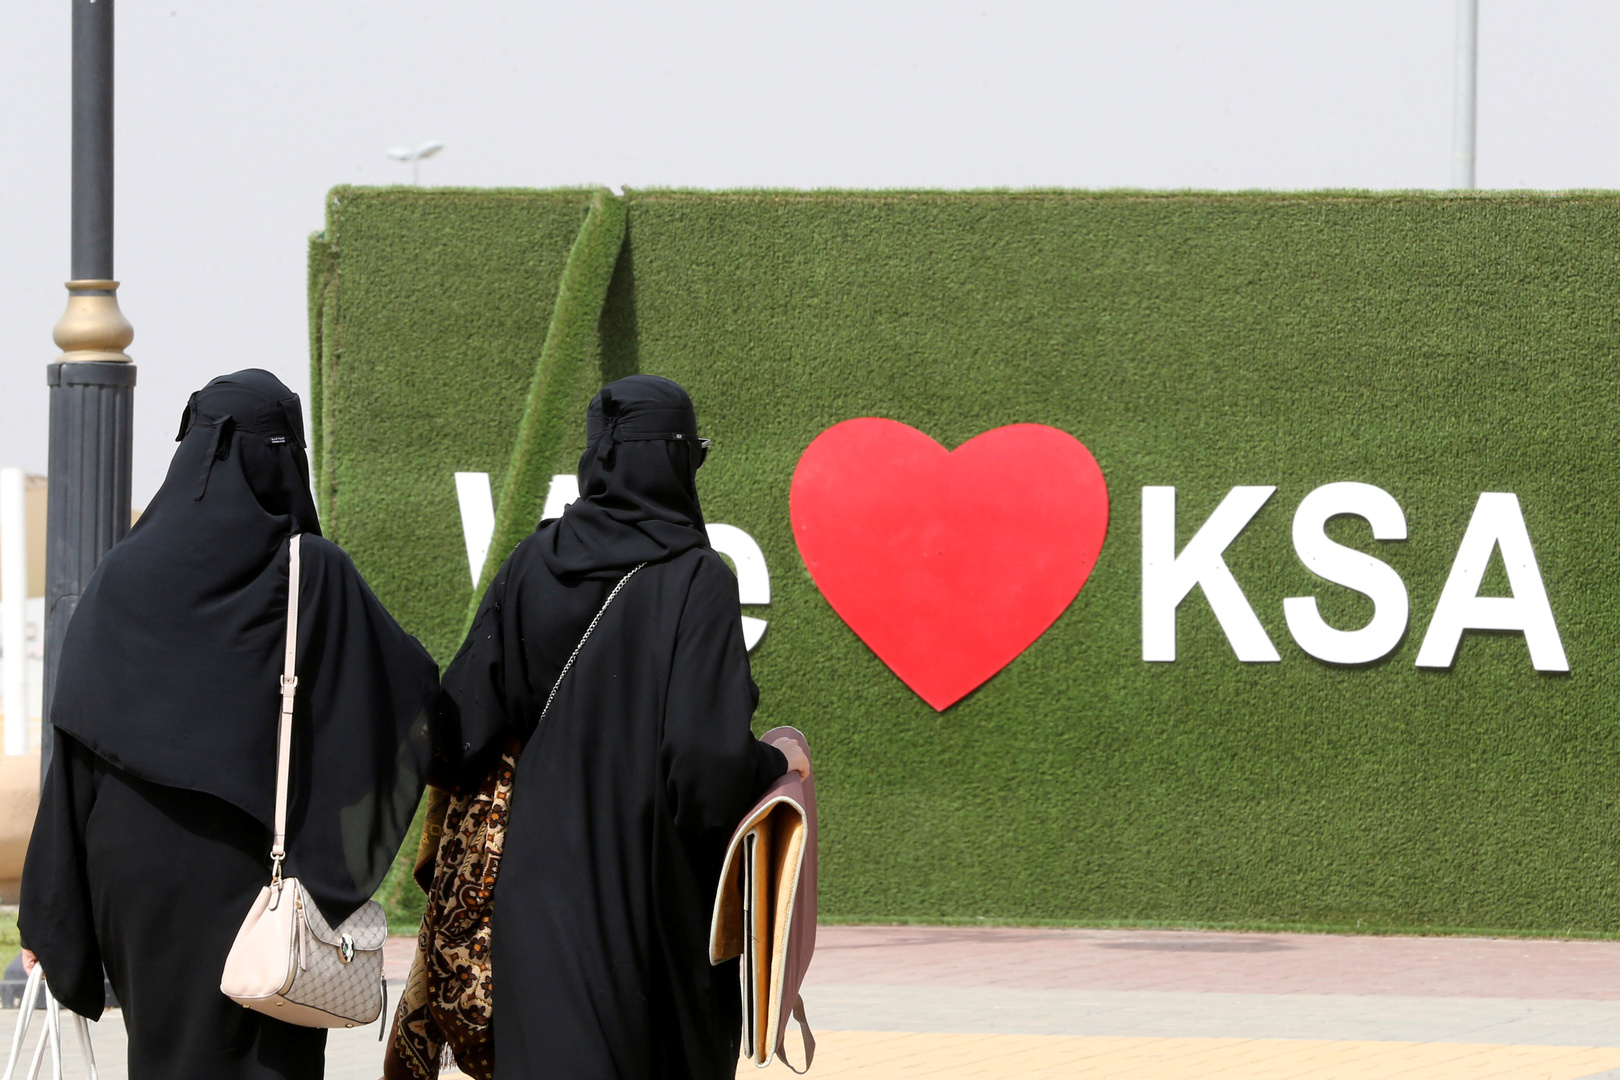 سعودية تدخل موسوعة غينيس للأرقام القياسية (صور)